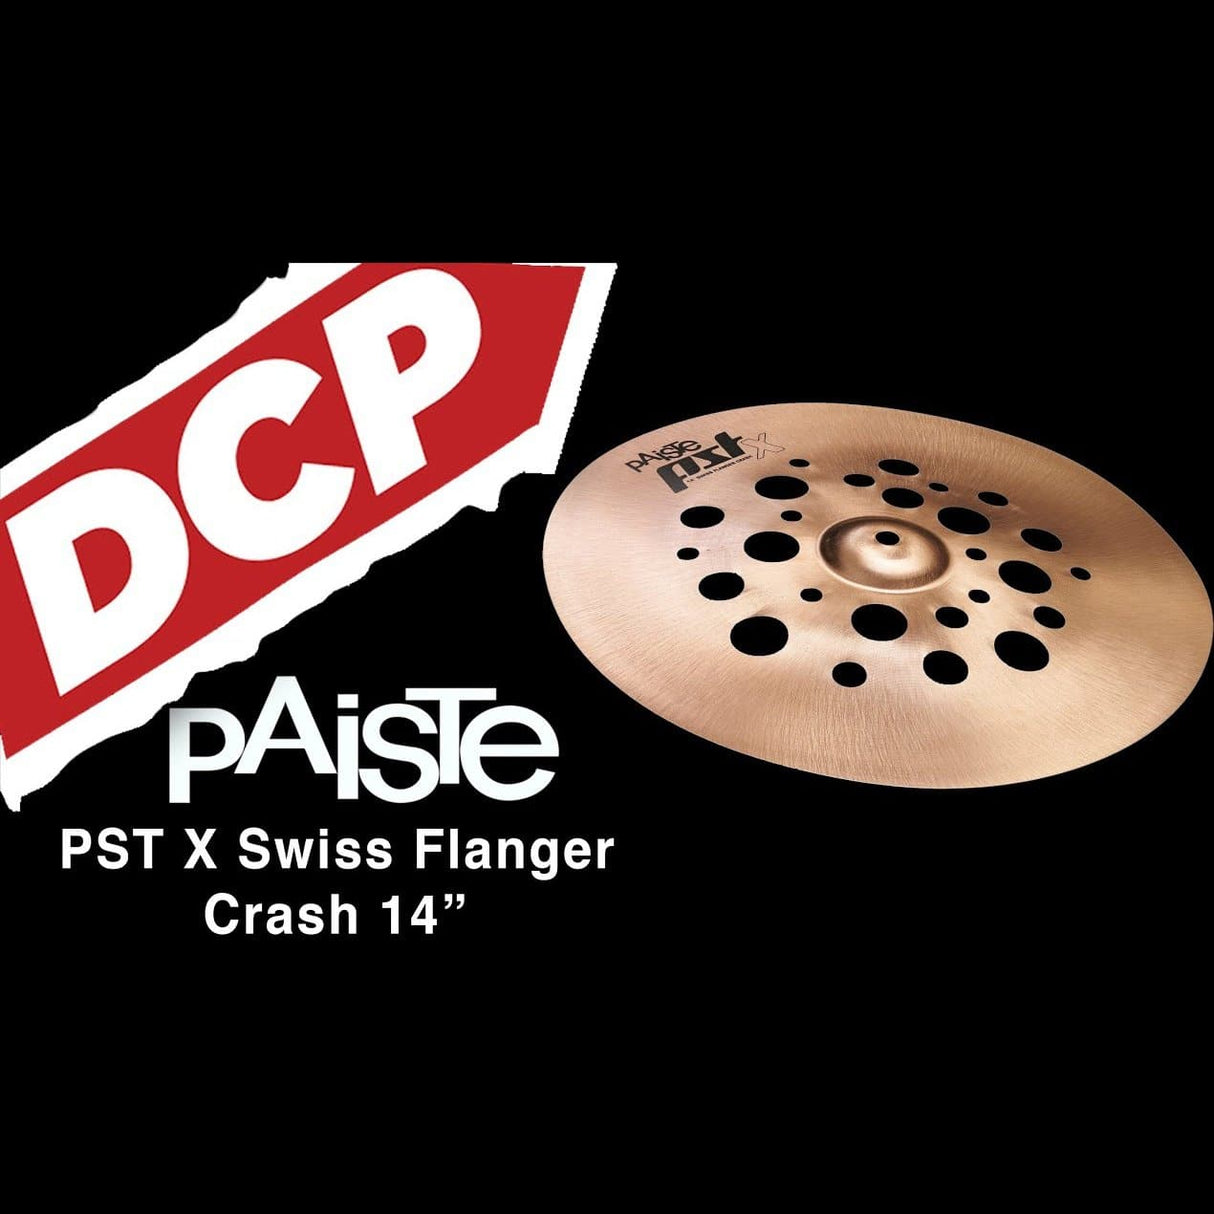 Paiste PSTX Swiss Flanger Crash Cymbal 14"